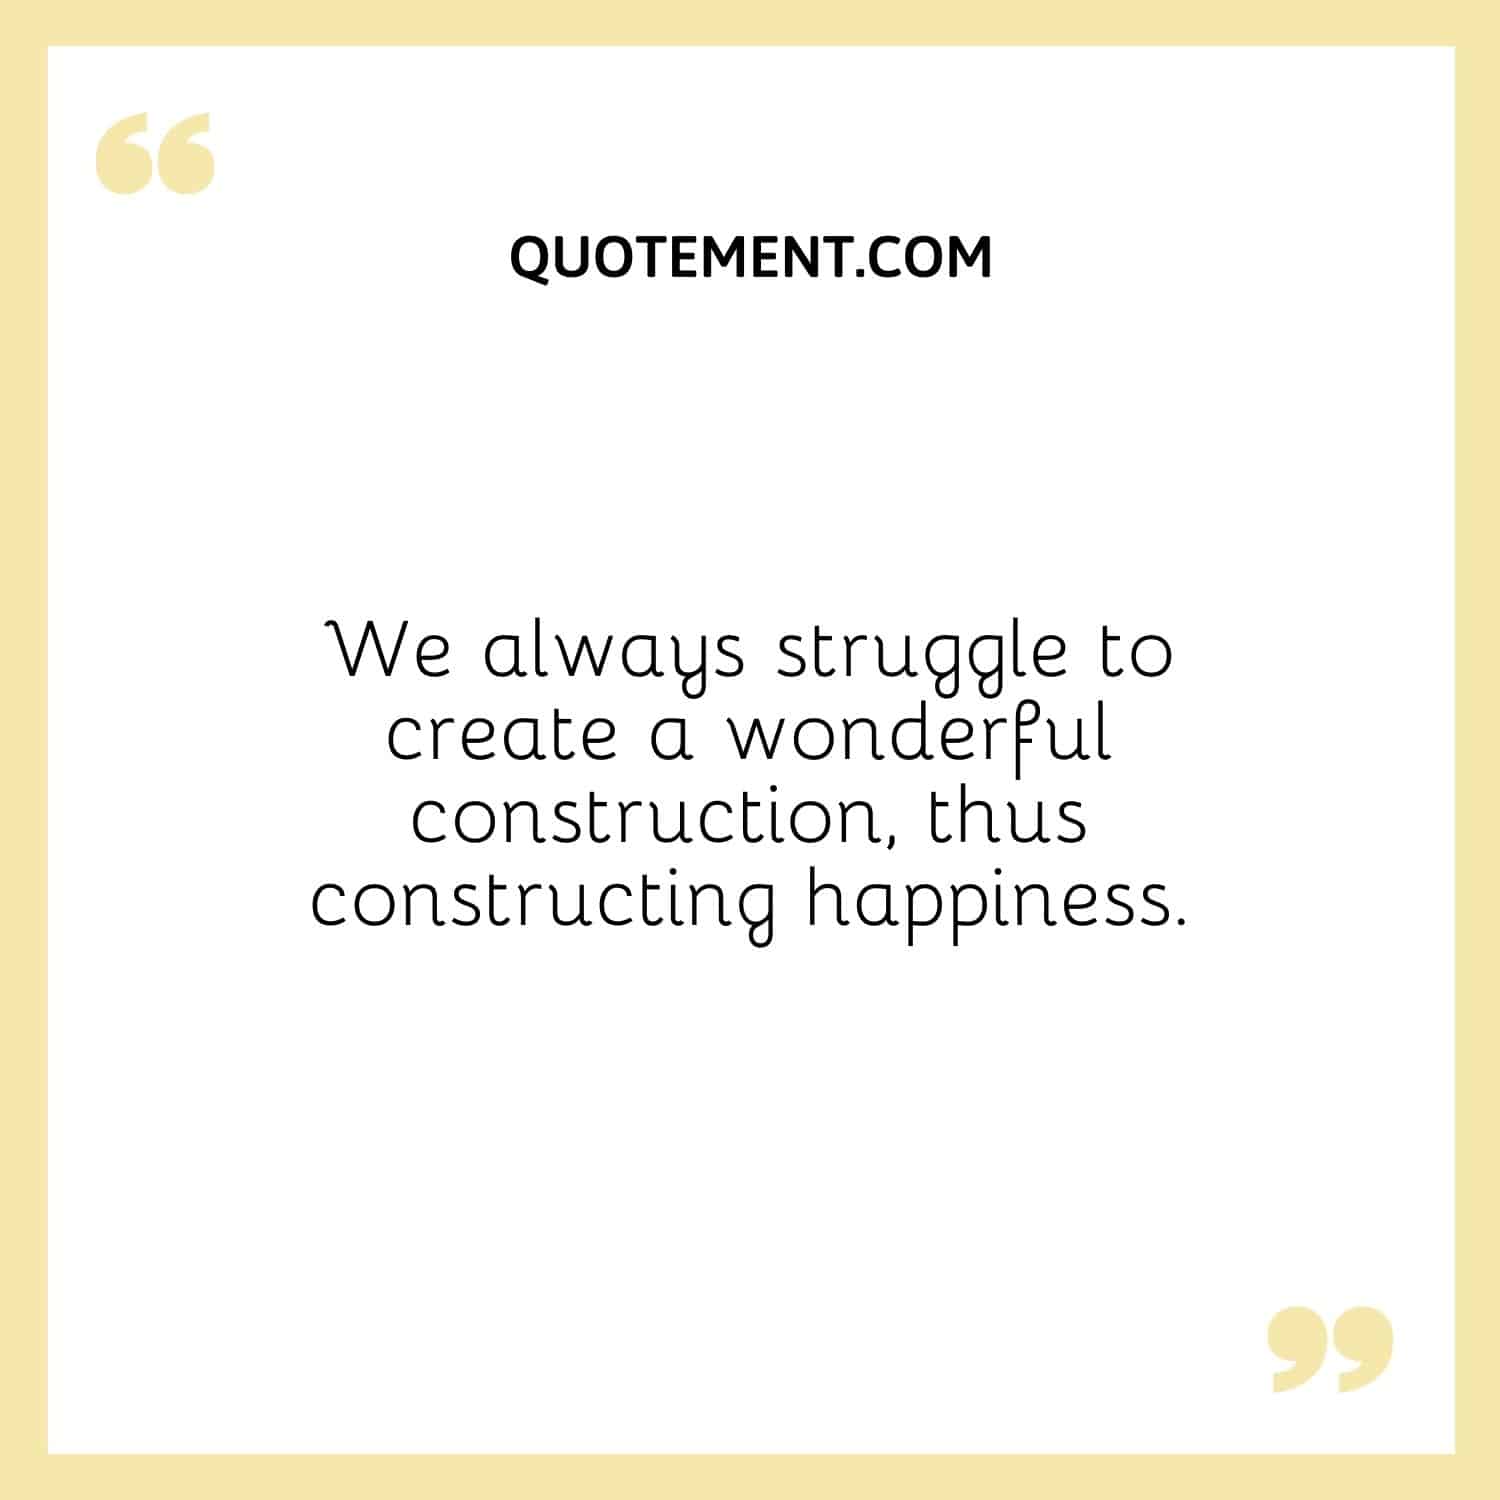 Siempre luchamos por crear una construcción maravillosa, construyendo así la felicidad.